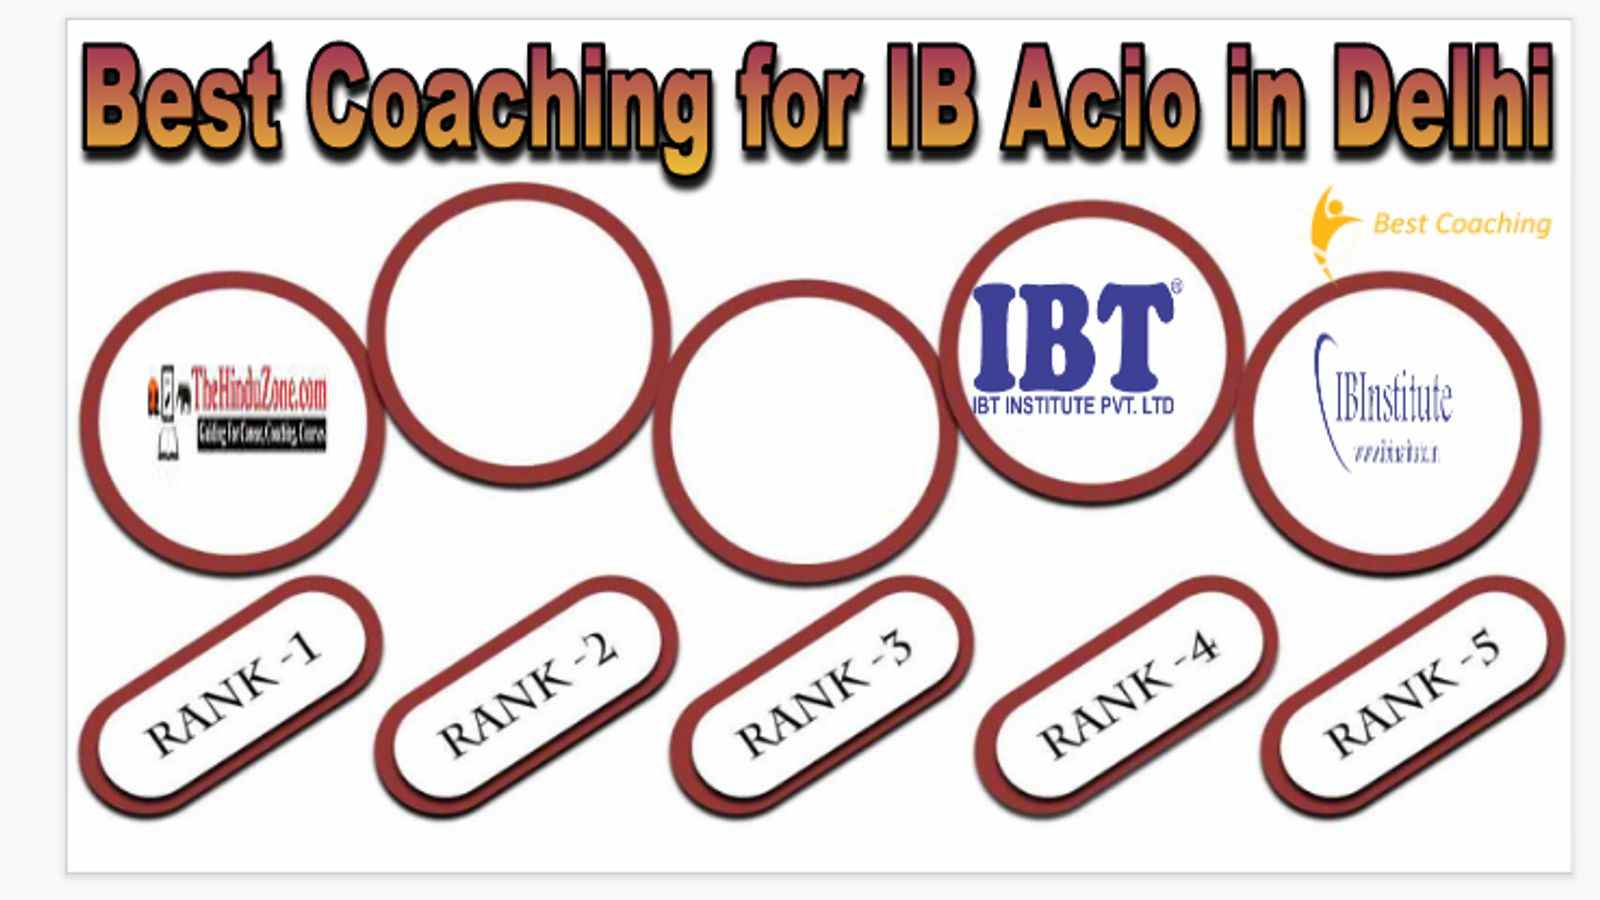 Best coaching for ib acio in Delhi